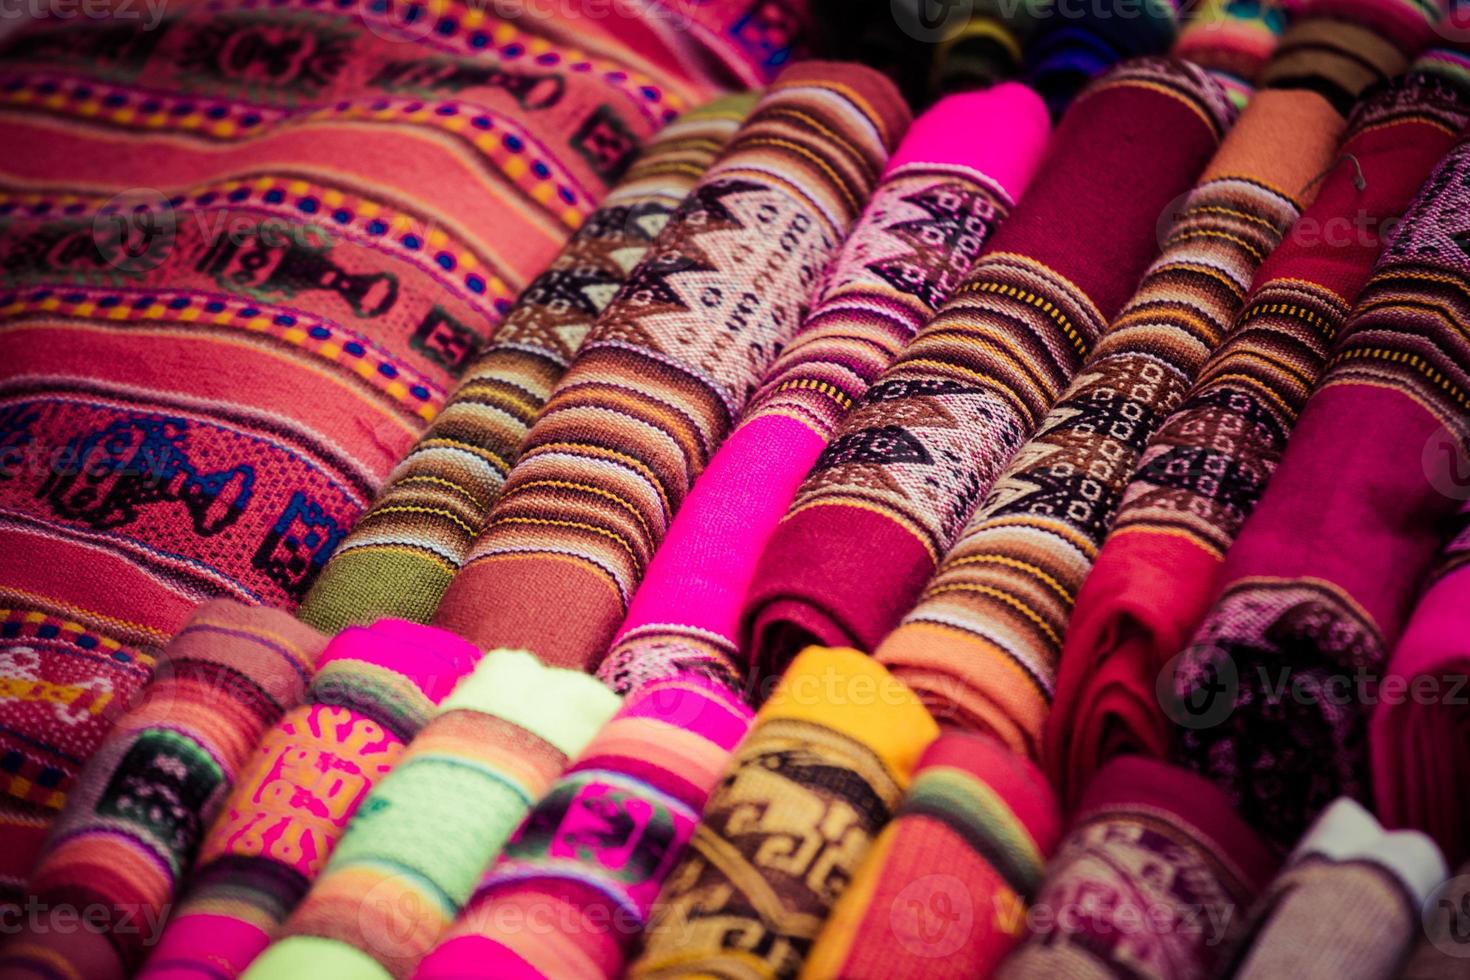 kleurrijke stof op de markt in peru, Zuid-Amerika foto